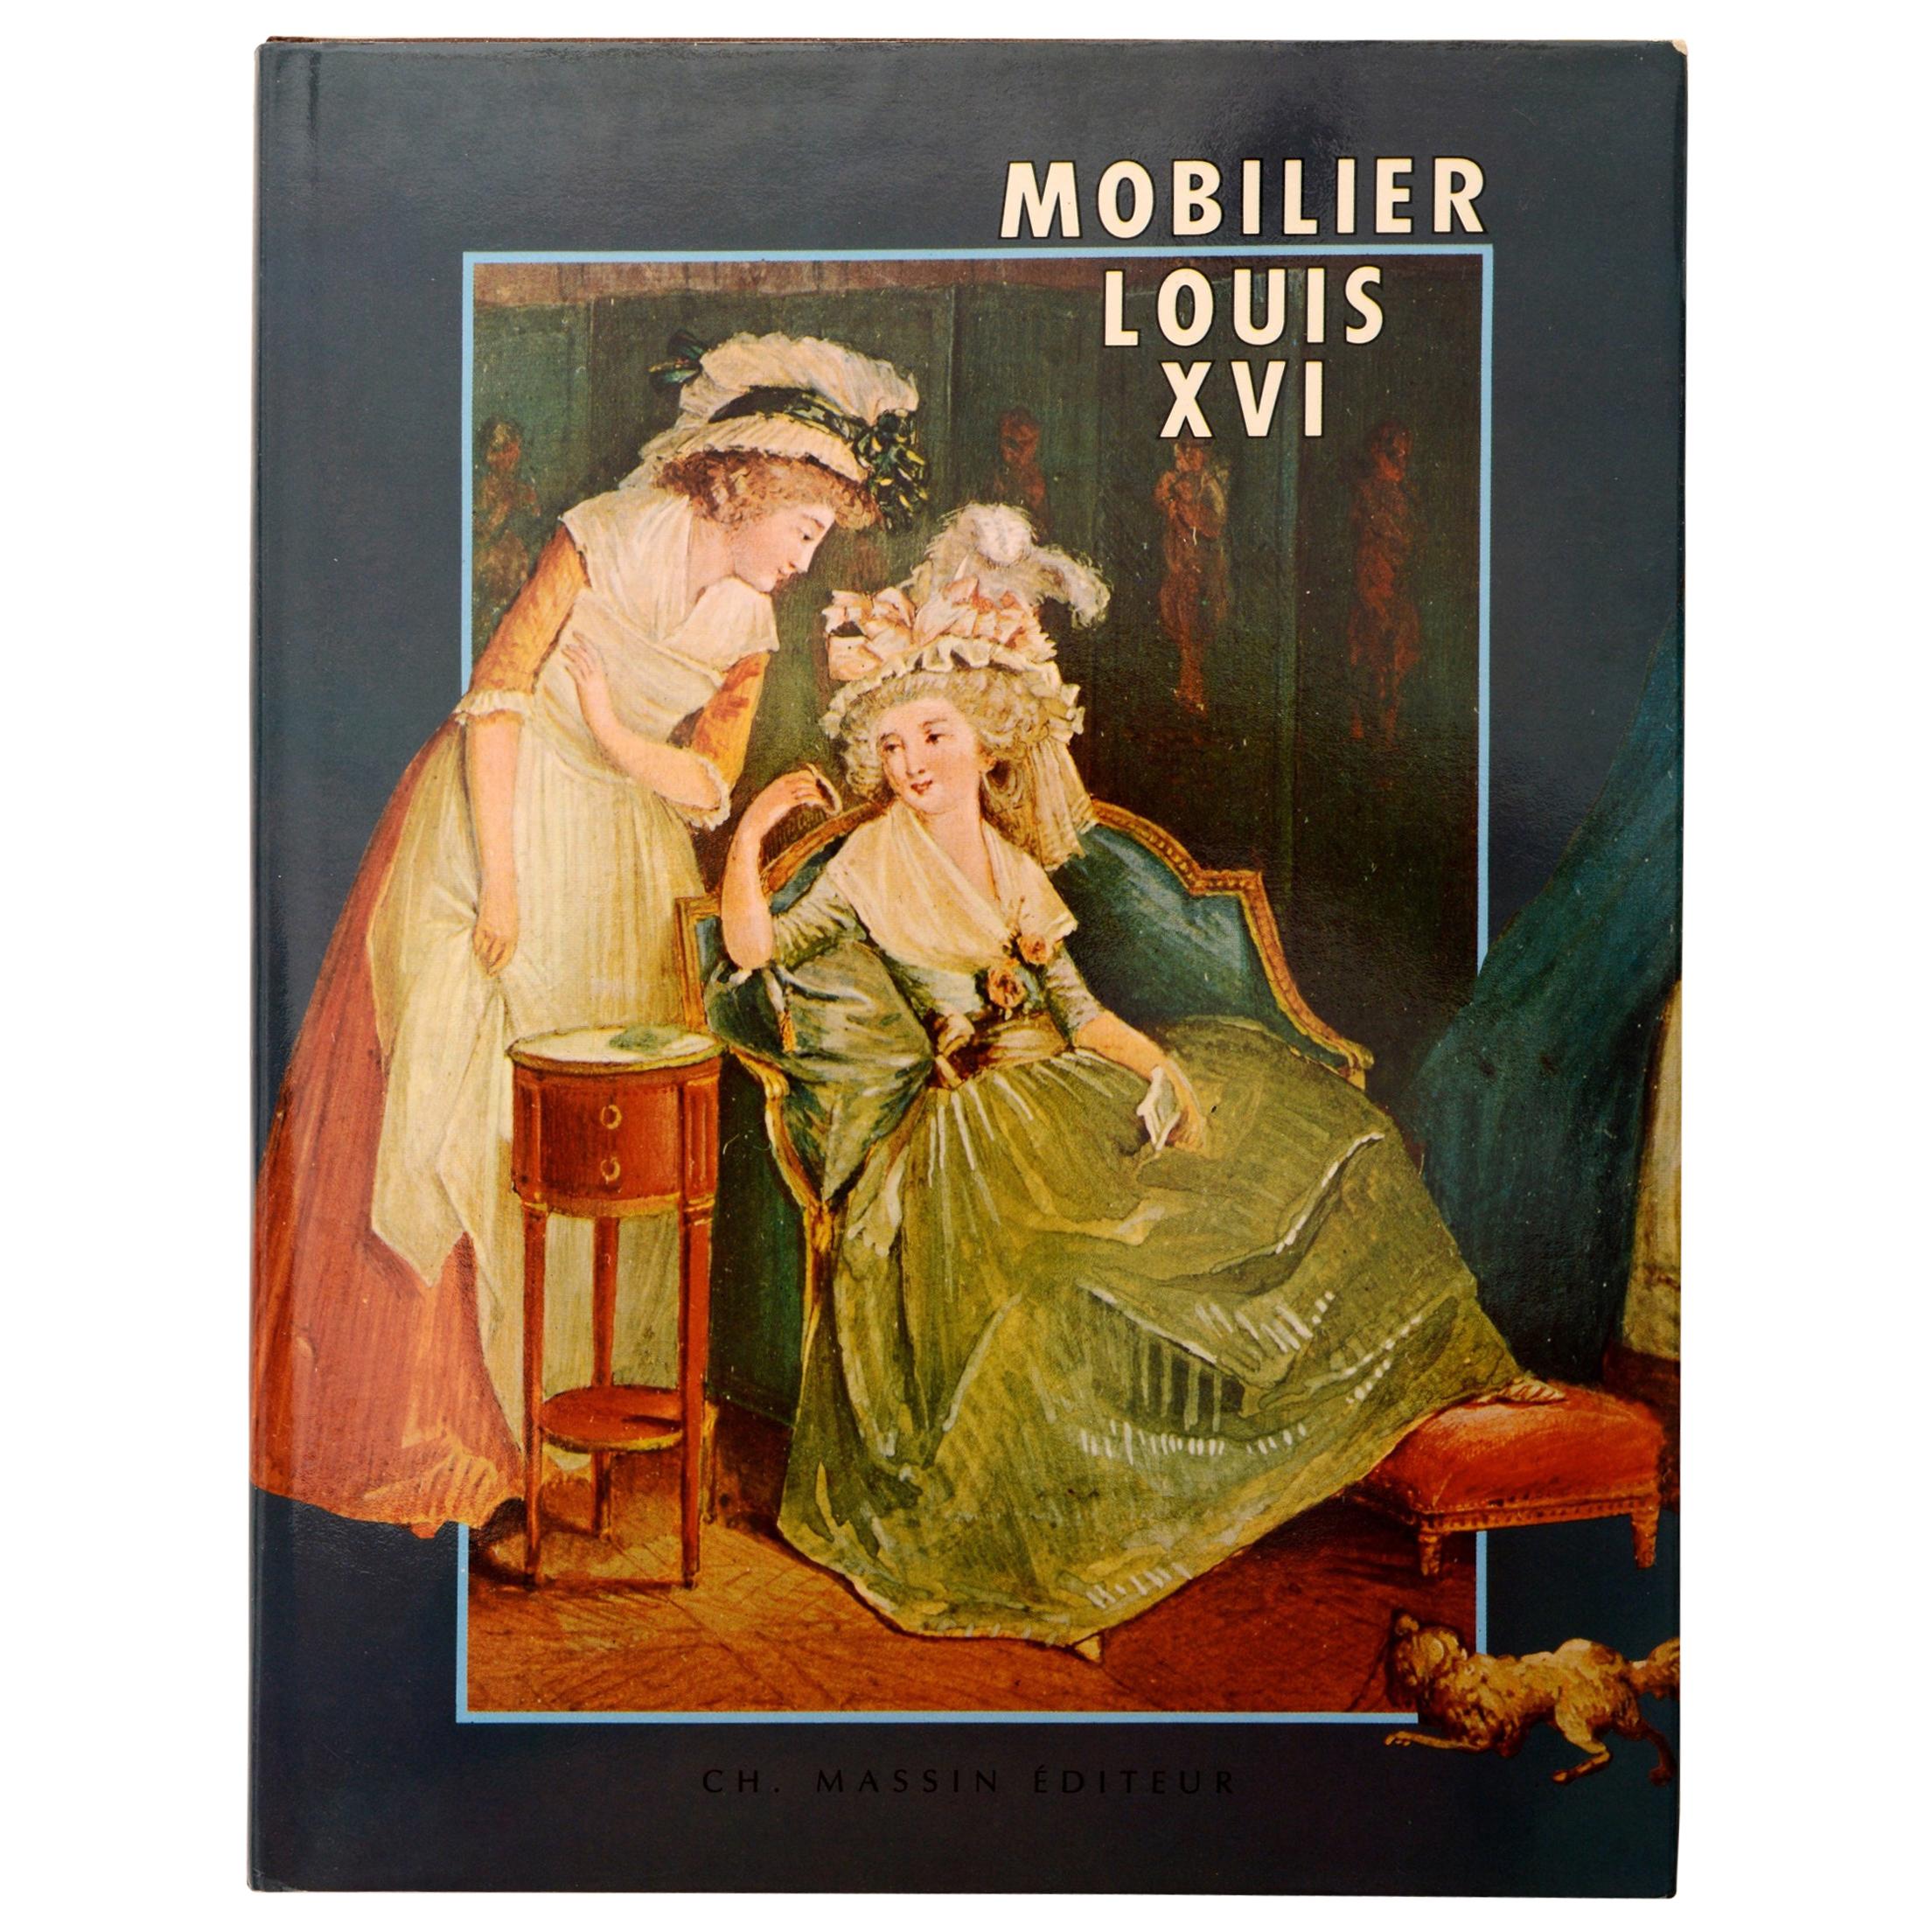 Mobilier Louis XVI by Monica Burckhardt, 1st Edition For Sale